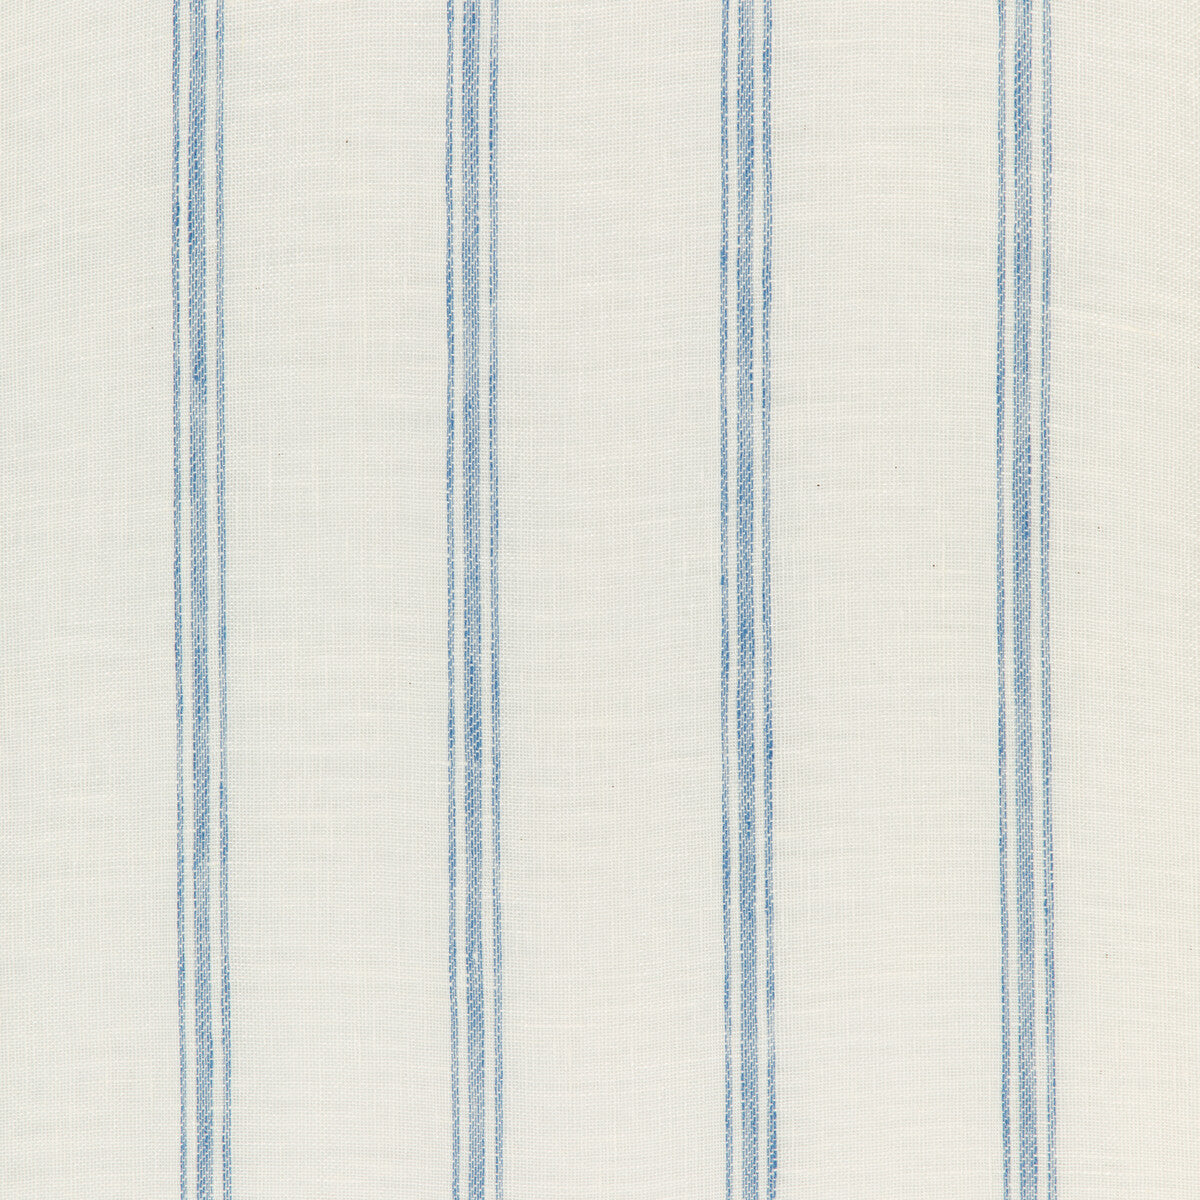 Kravet Design fabric in 4848-15 color - pattern 4848.15.0 - by Kravet Design